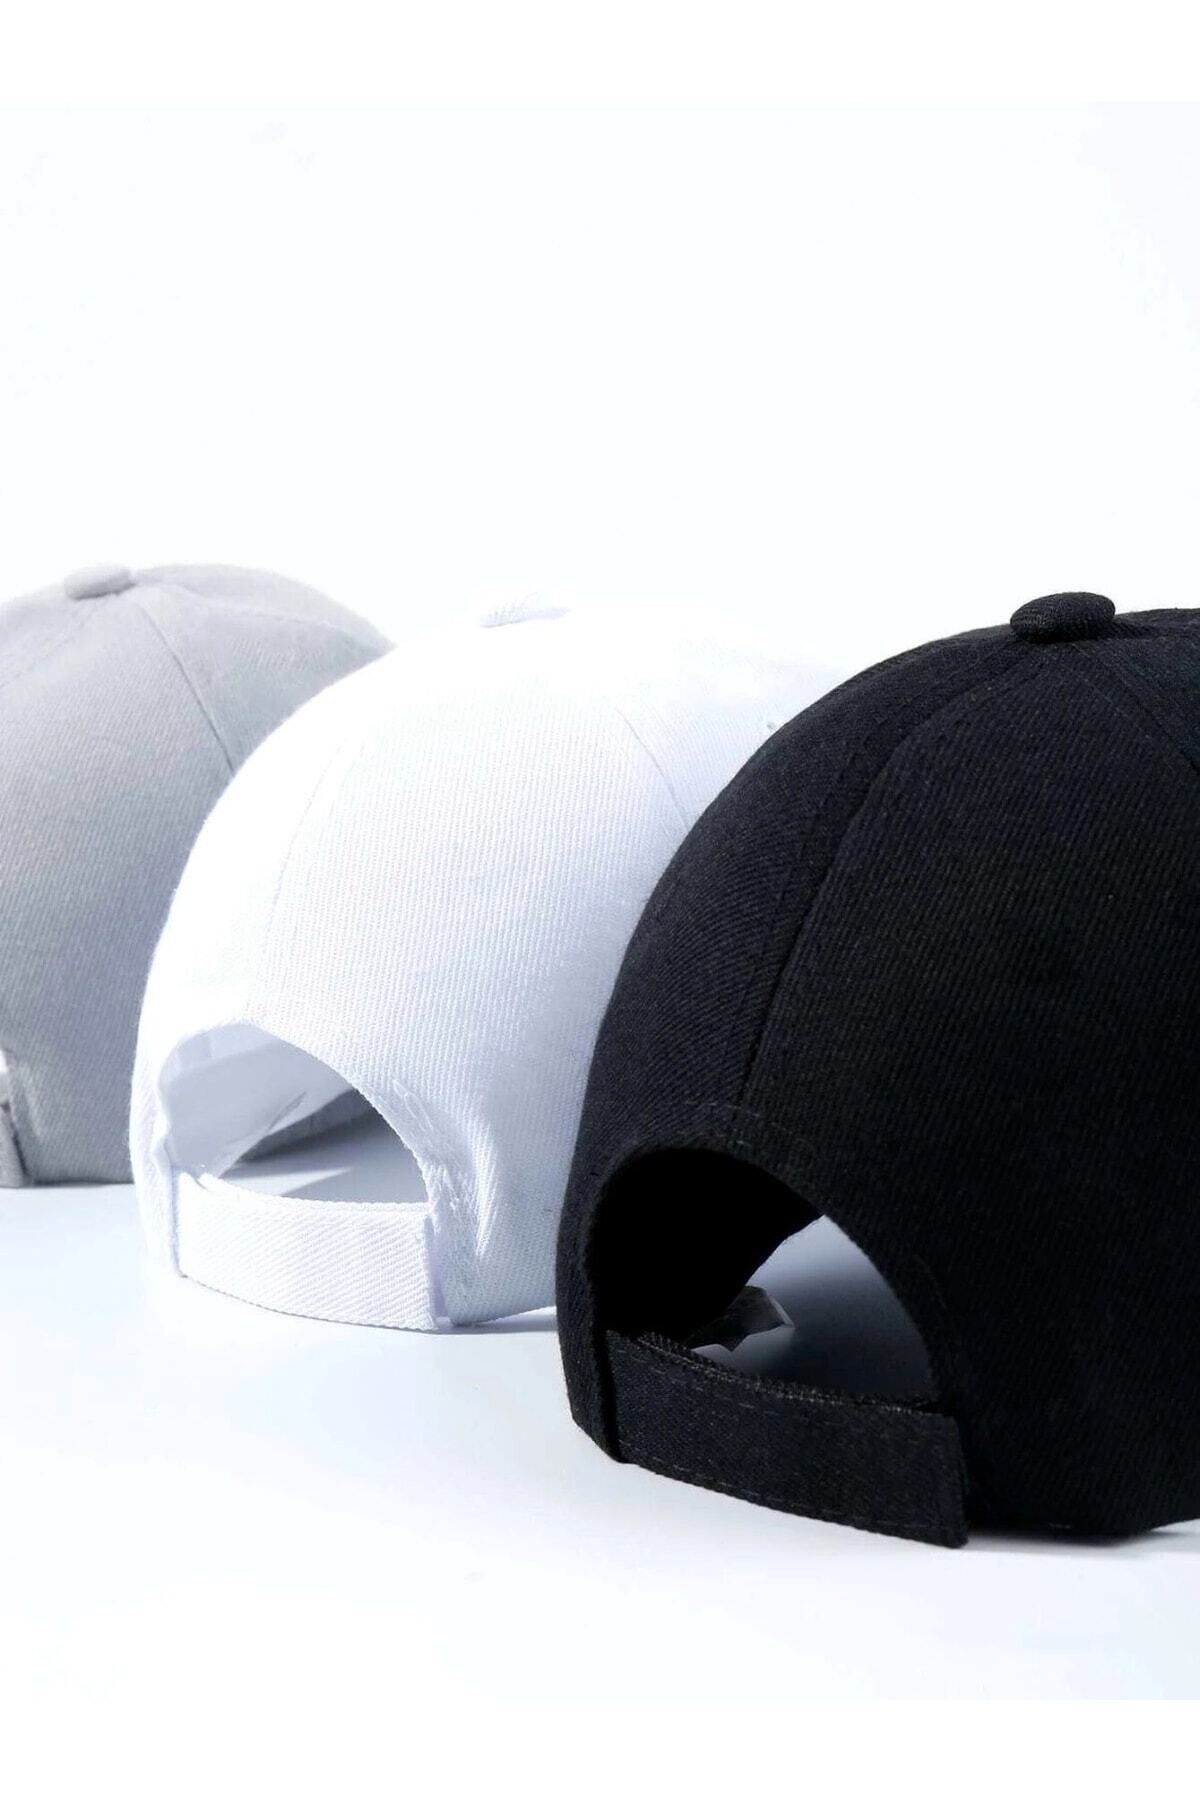 GYES Spor Şapka Unisex 3 Adet Arkası Cırtlı Ayarlanabilir